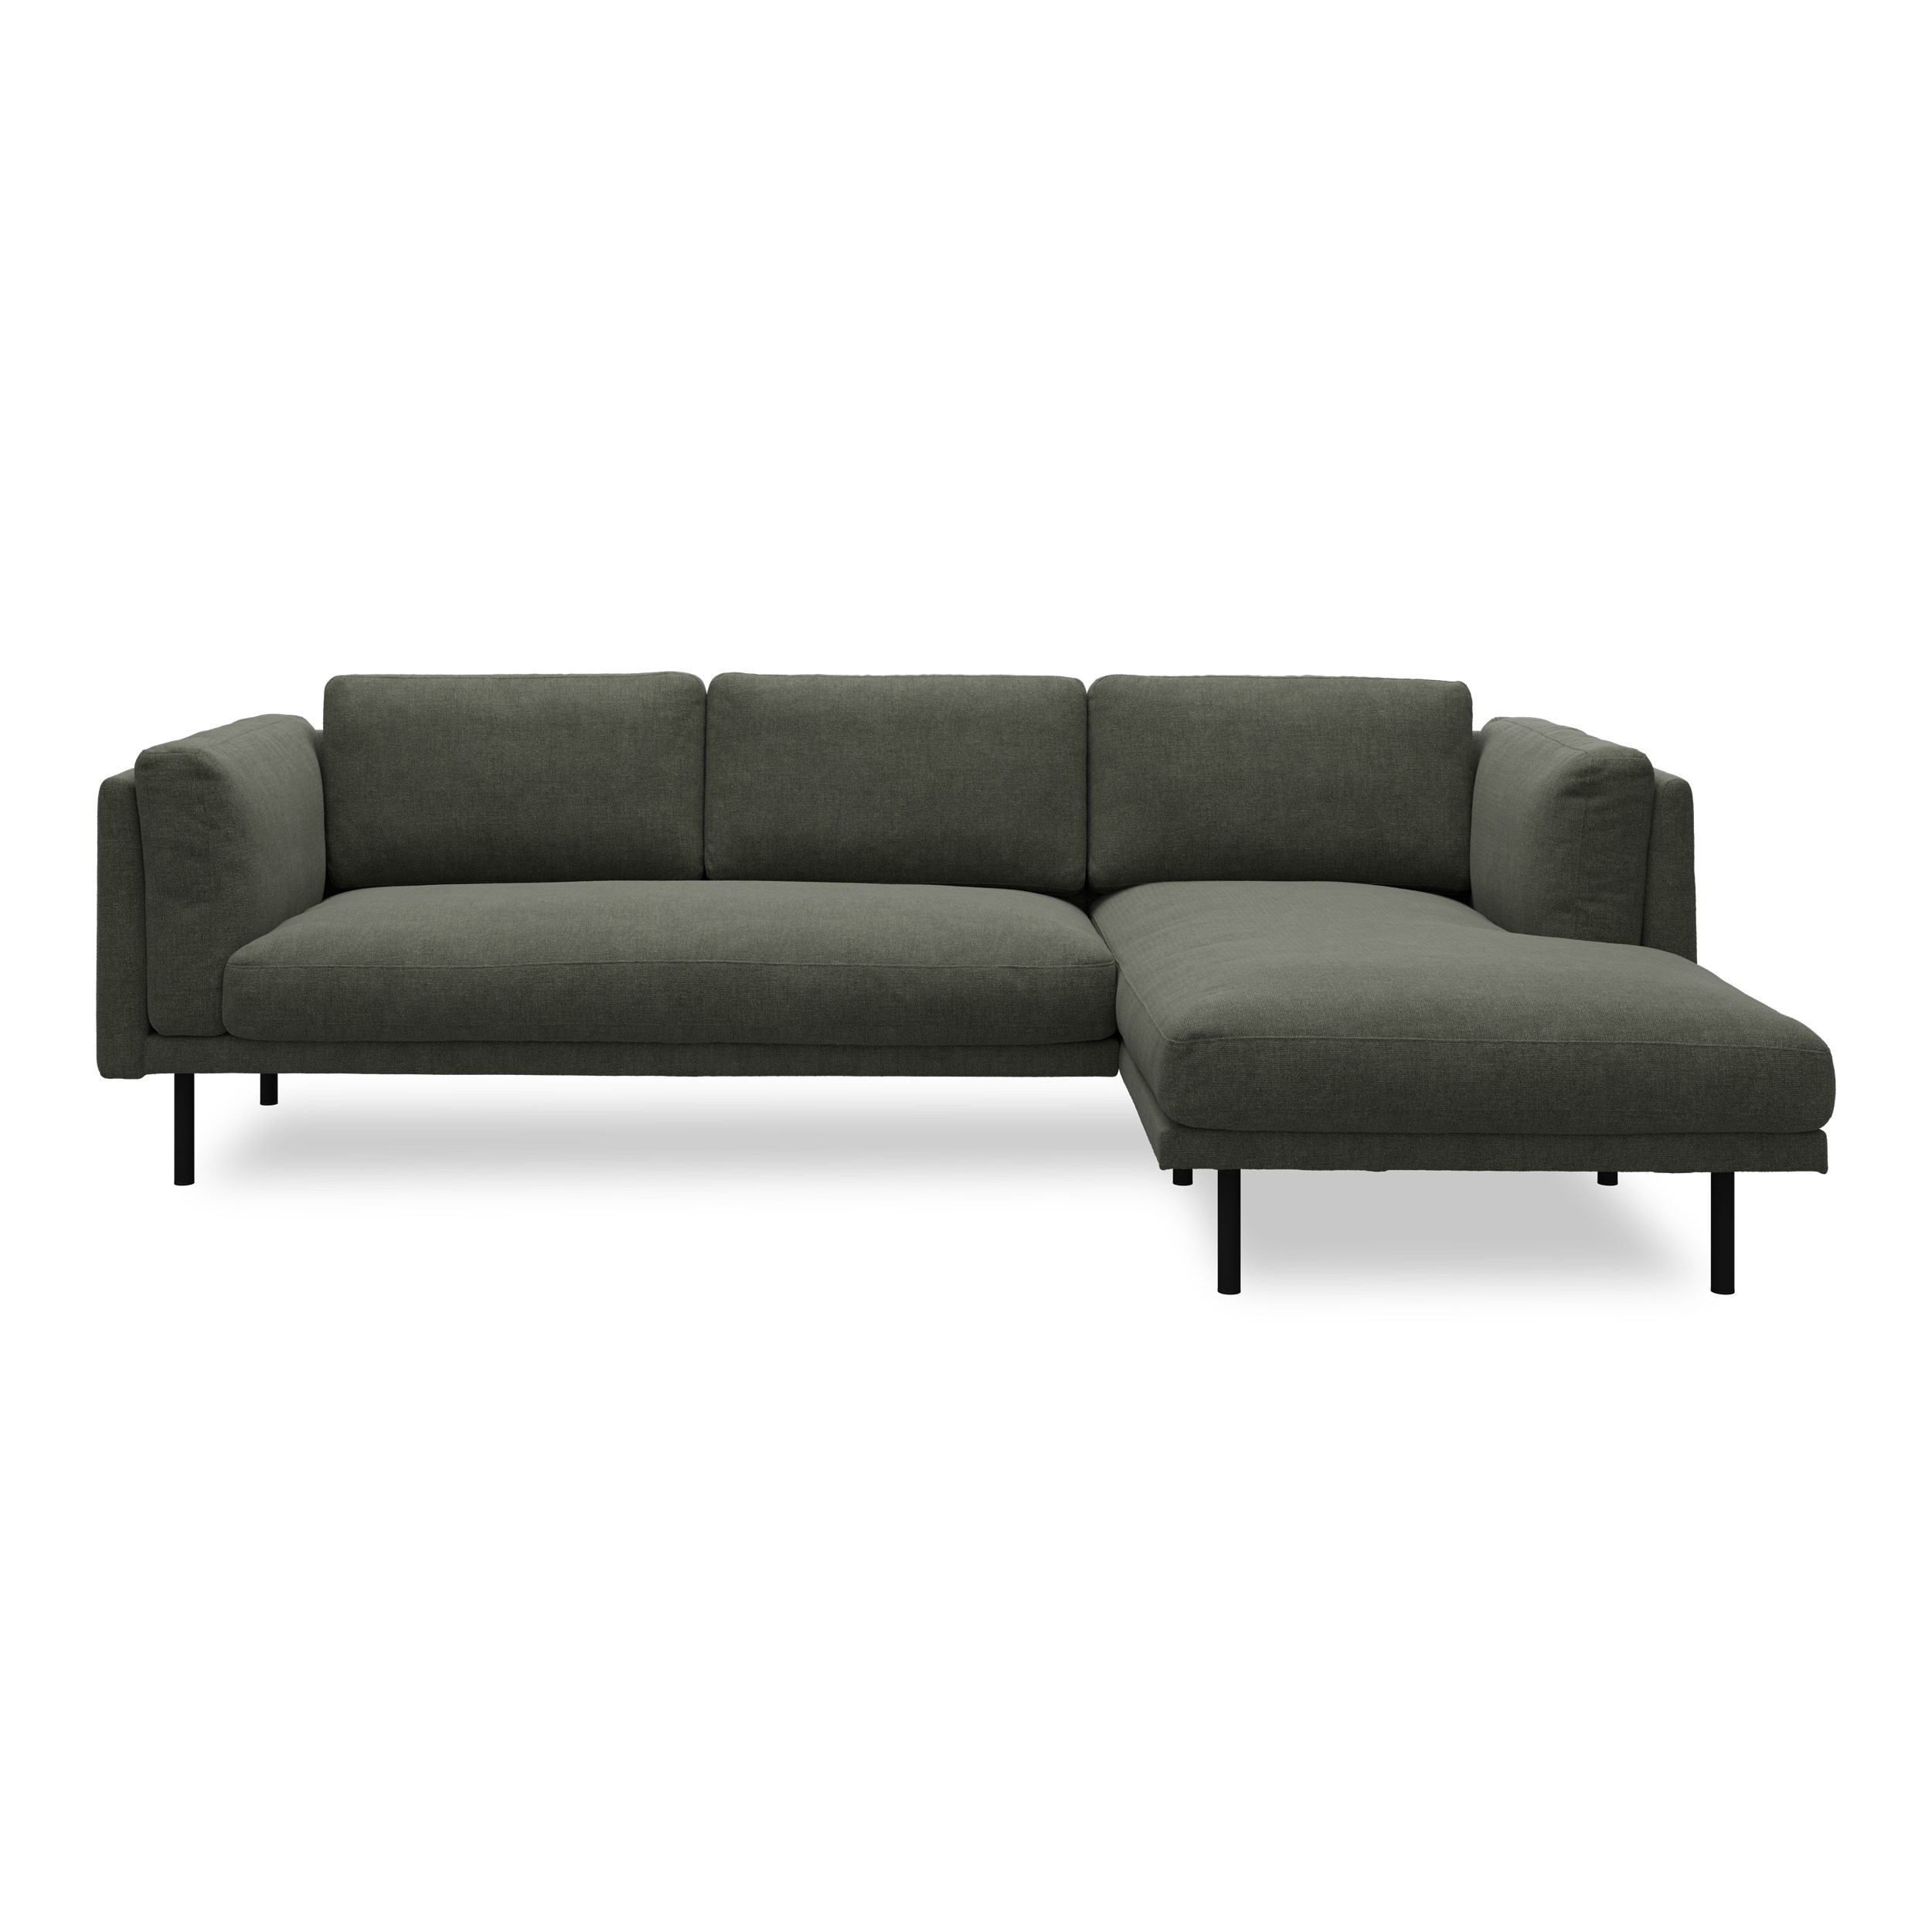 Nebel högervänd soffa med schäslong - Denno 162 Deep F. Green Klädsel och svart pulverlackerad metall